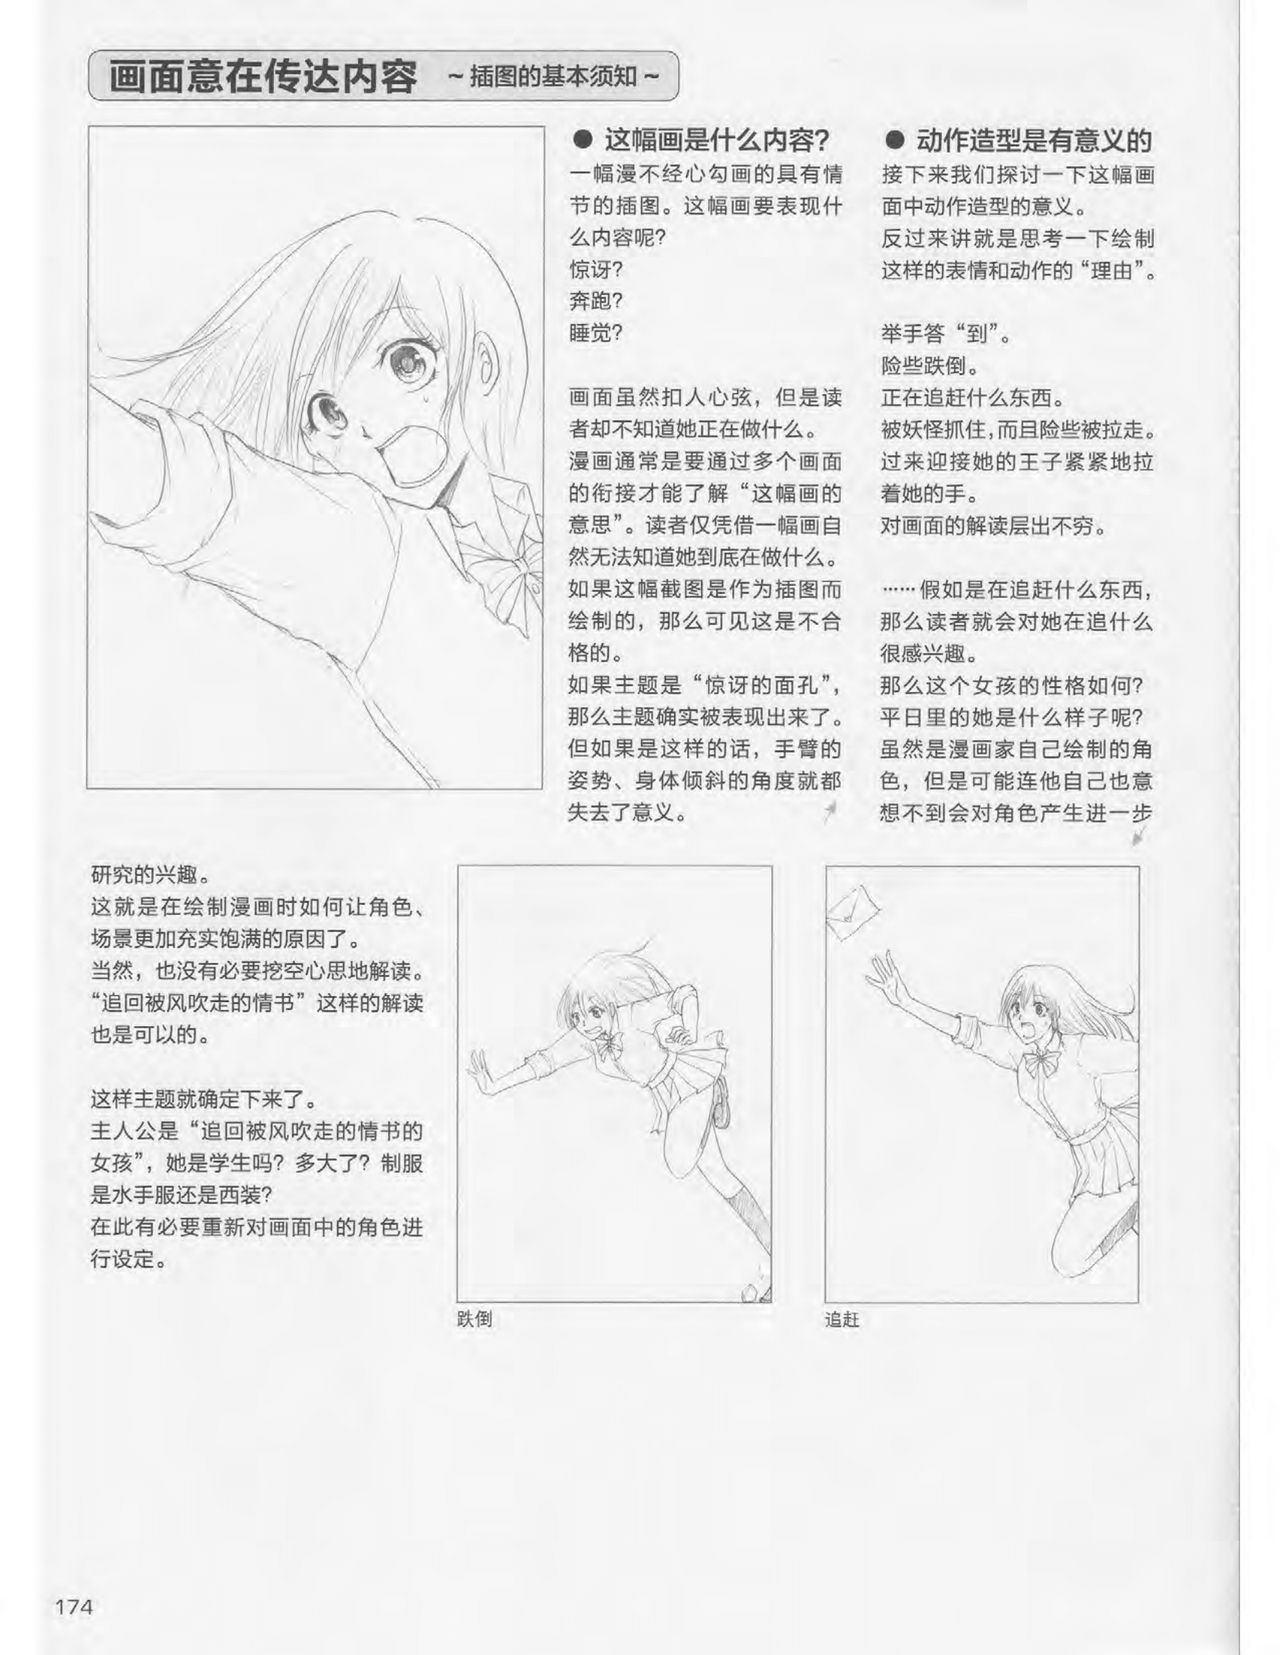 Japanese Manga Master Lecture 3: Lin Akira and Kakumaru Maru Talk About Glamorous Character Modeling 173